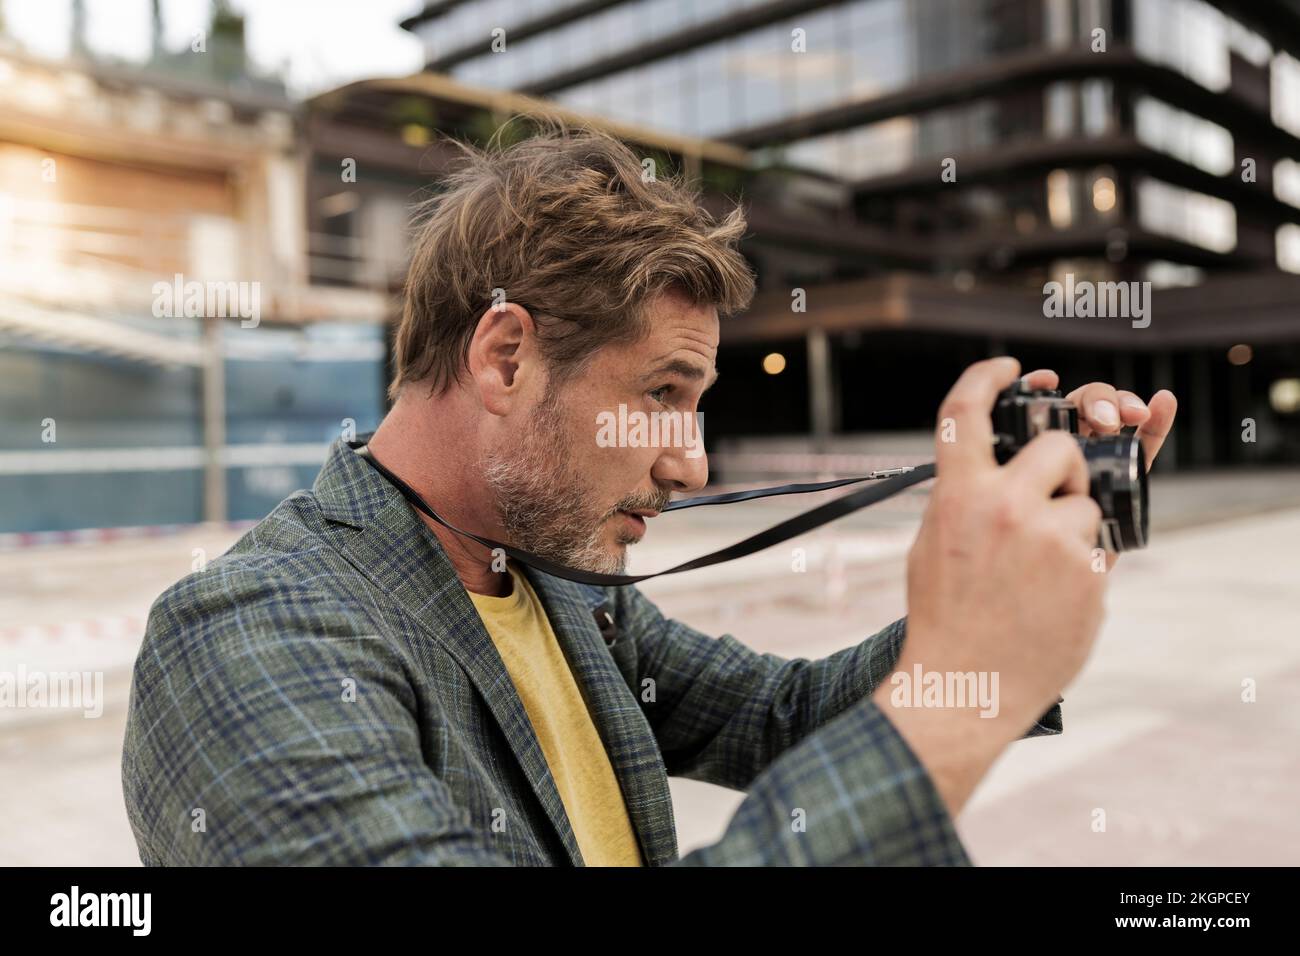 Homme prenant des photos à partir d'un appareil photo en ville Banque D'Images